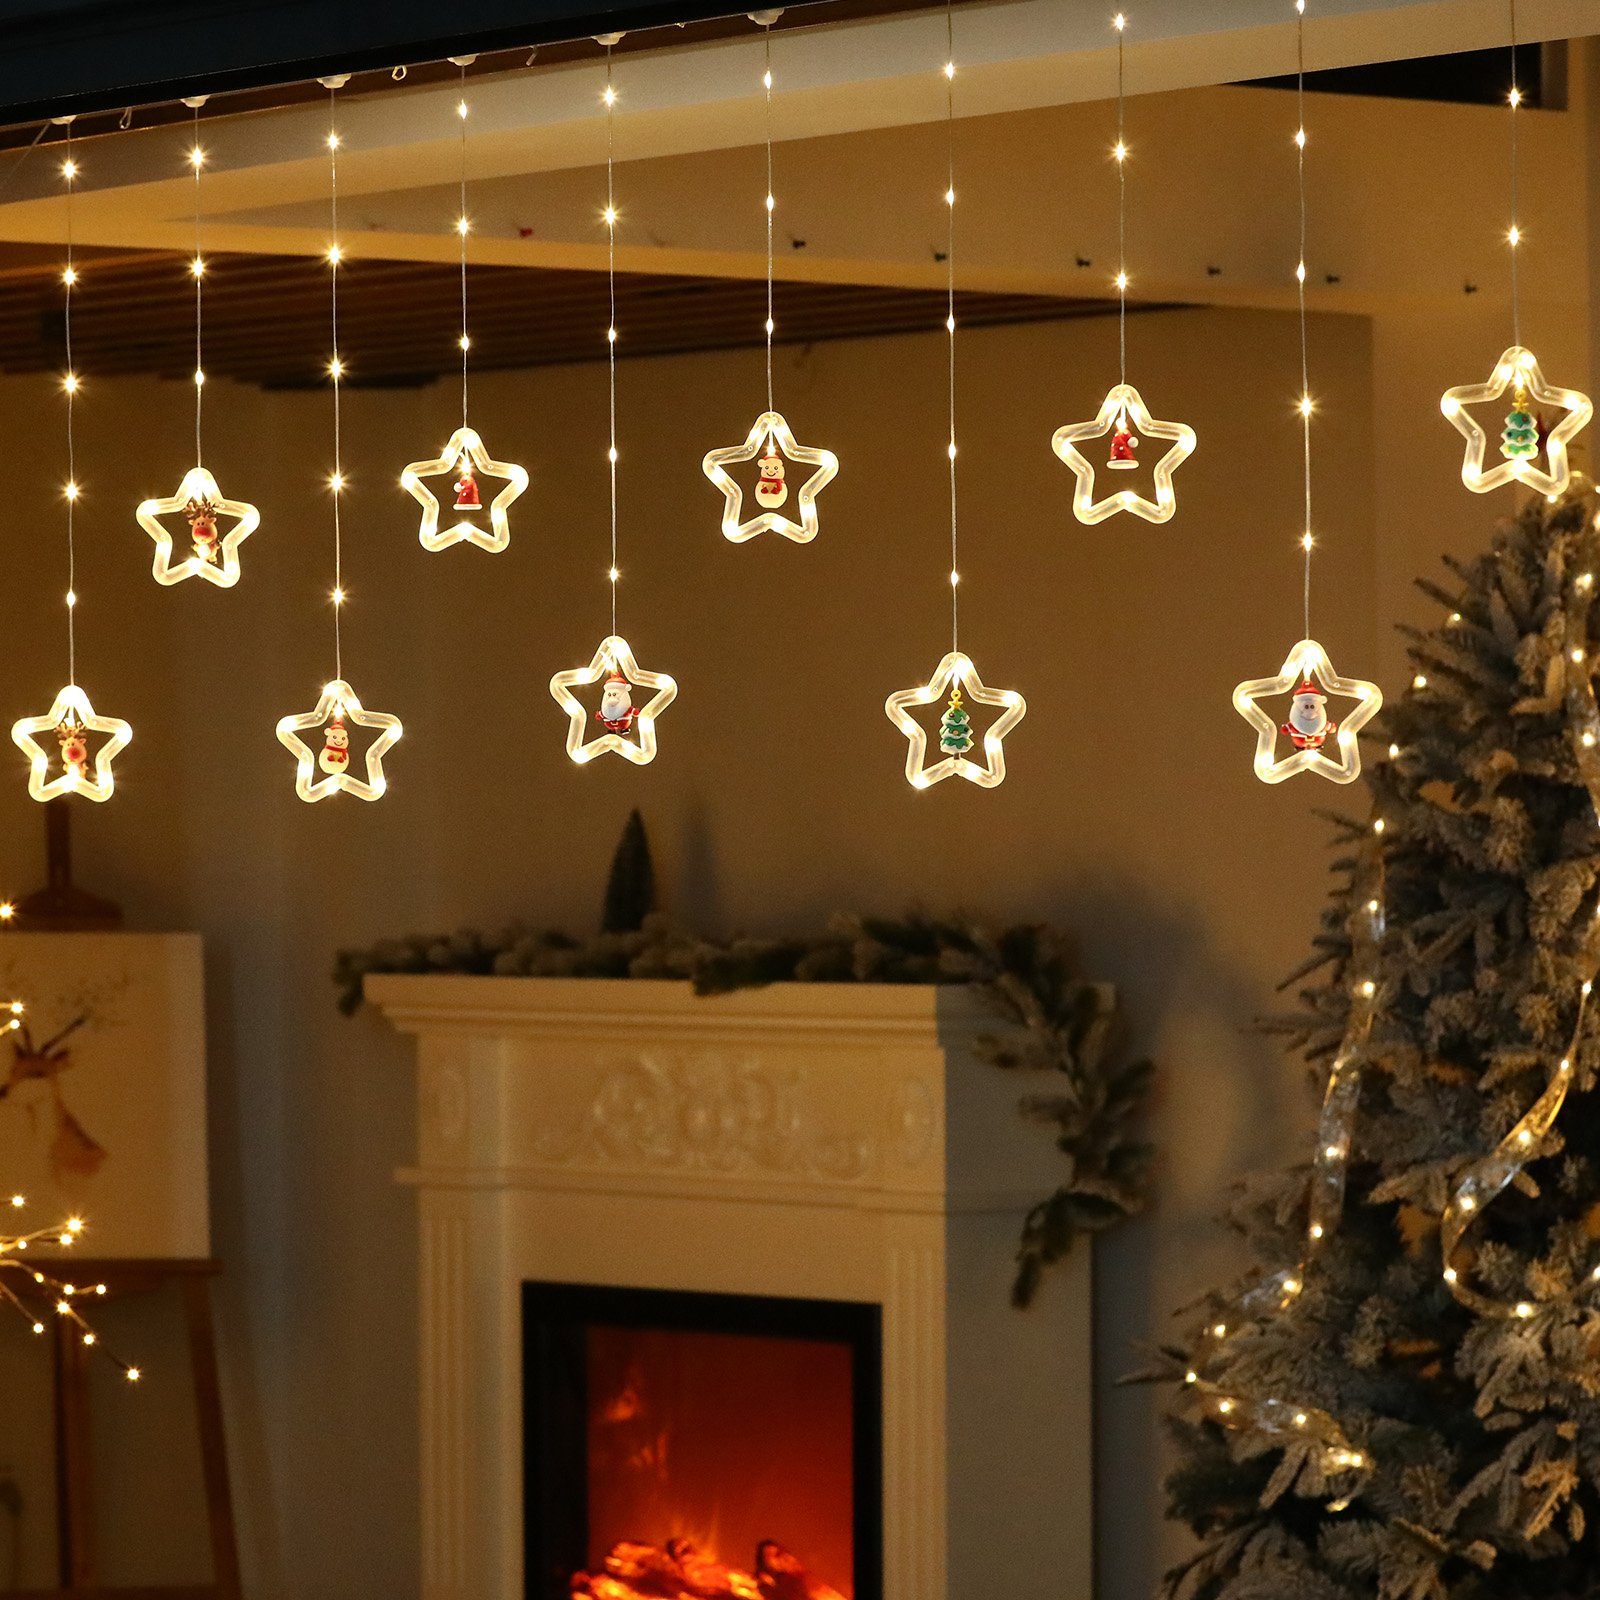 Rosnek Weihnachtsbaum LED-Lichtervorhang für Deko, Fenster Rentier Weihnachtsornamente, Schlafzimmer Weihnachtsmann 3M,